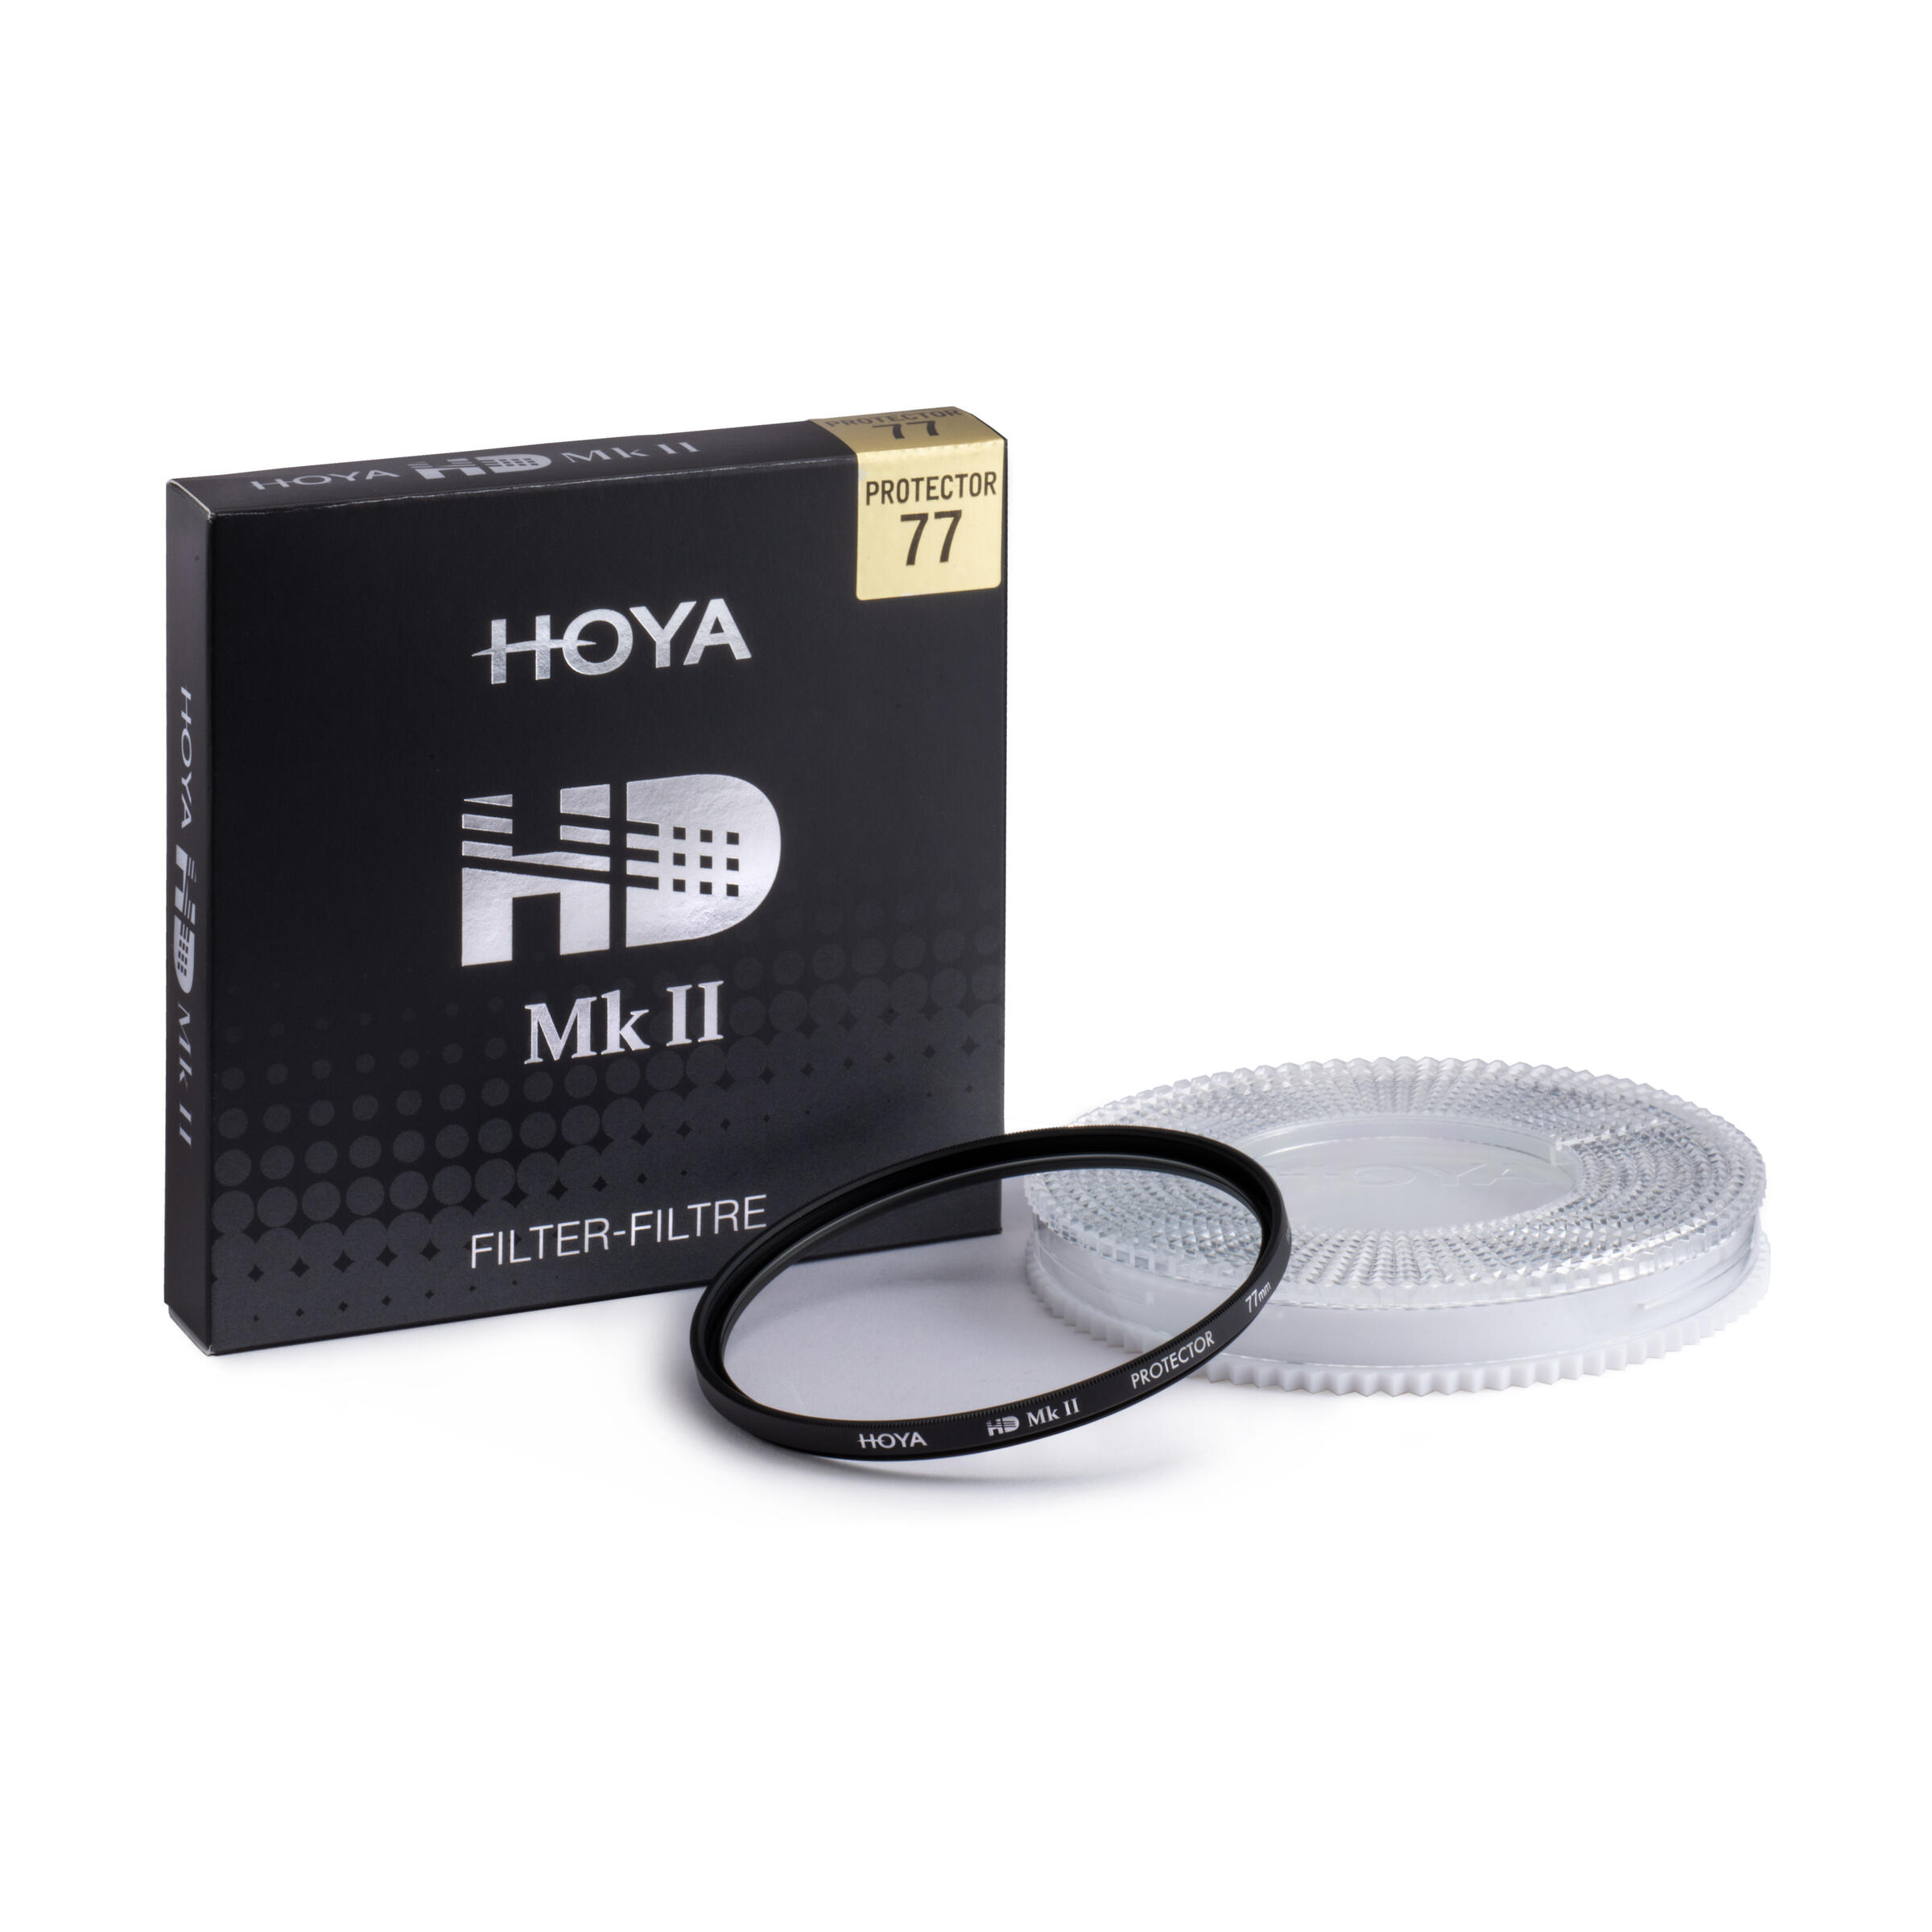 Hoya Filter : HD Mk II PROTECTOR 49mm